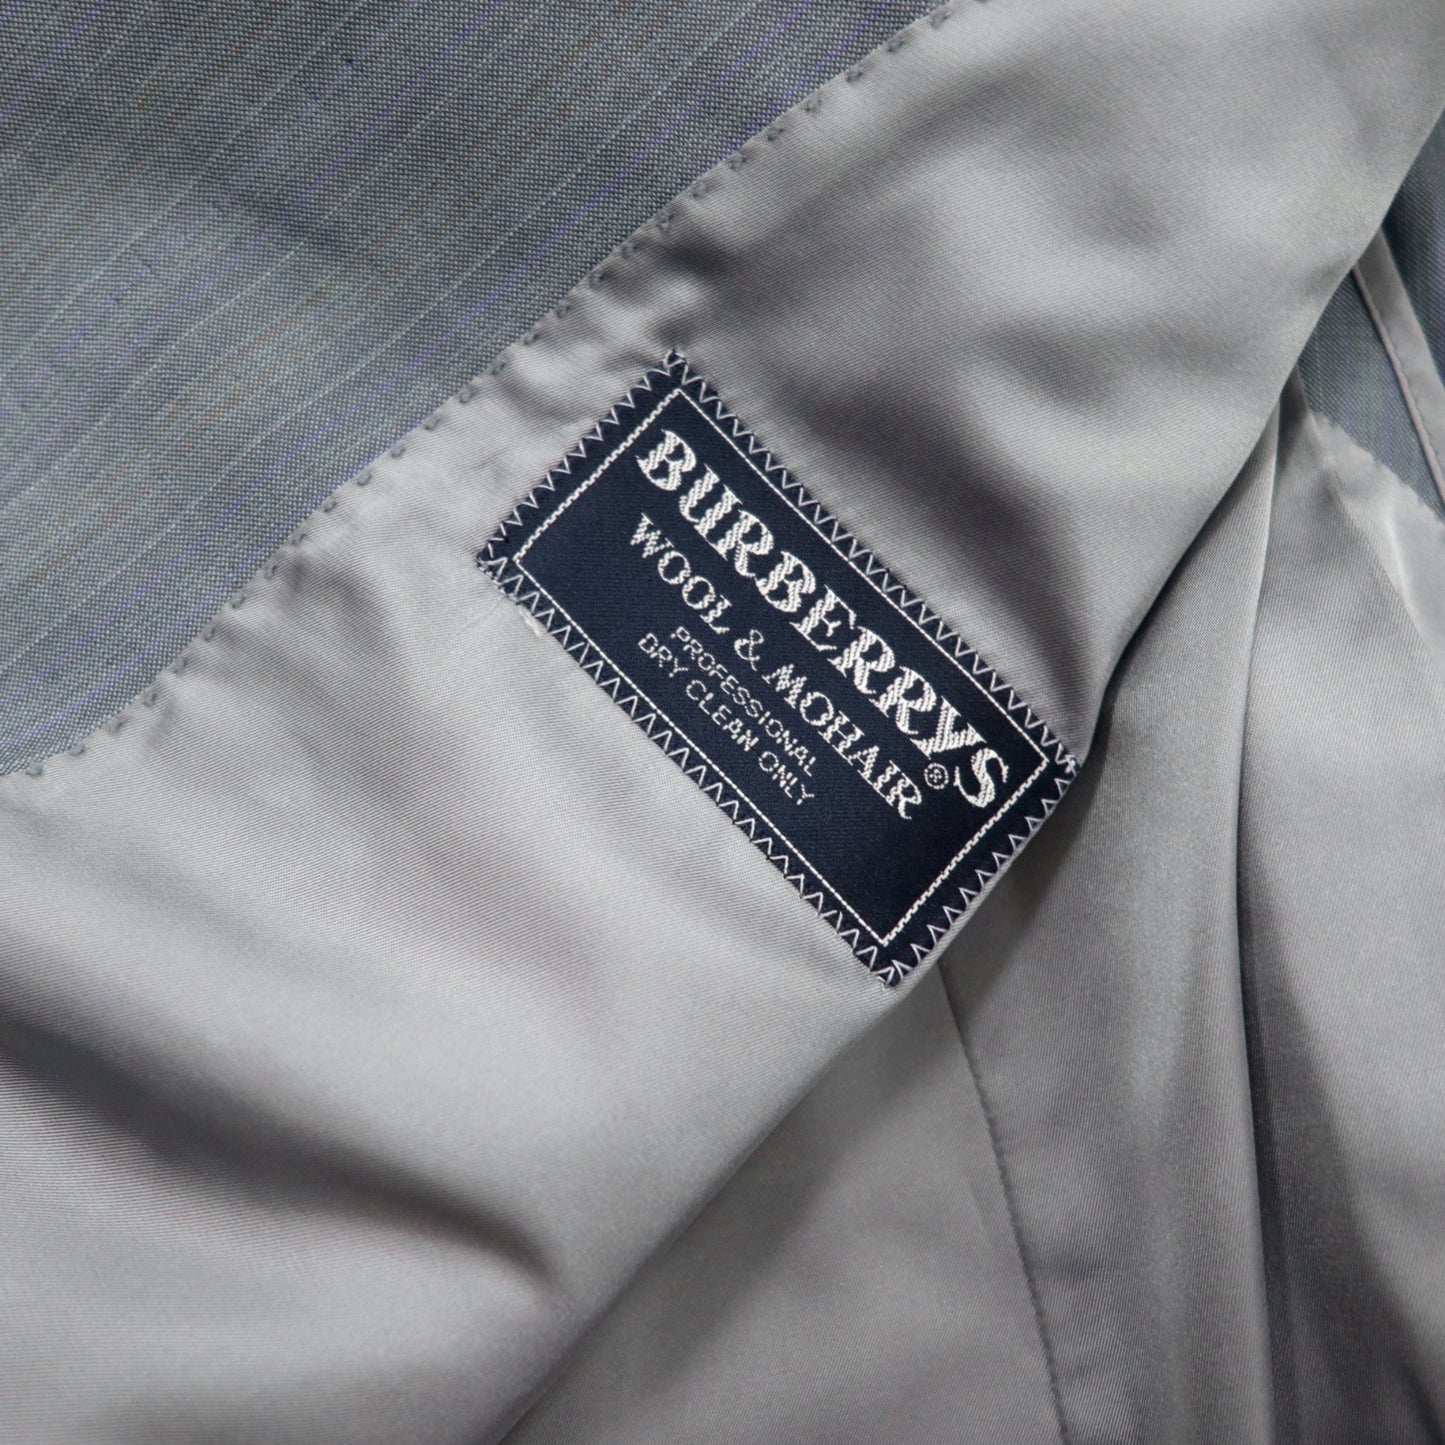 Burberrys オールド ダブル スーツ セットアップ AB5 グレー ブルー ウール モヘア混 日本製